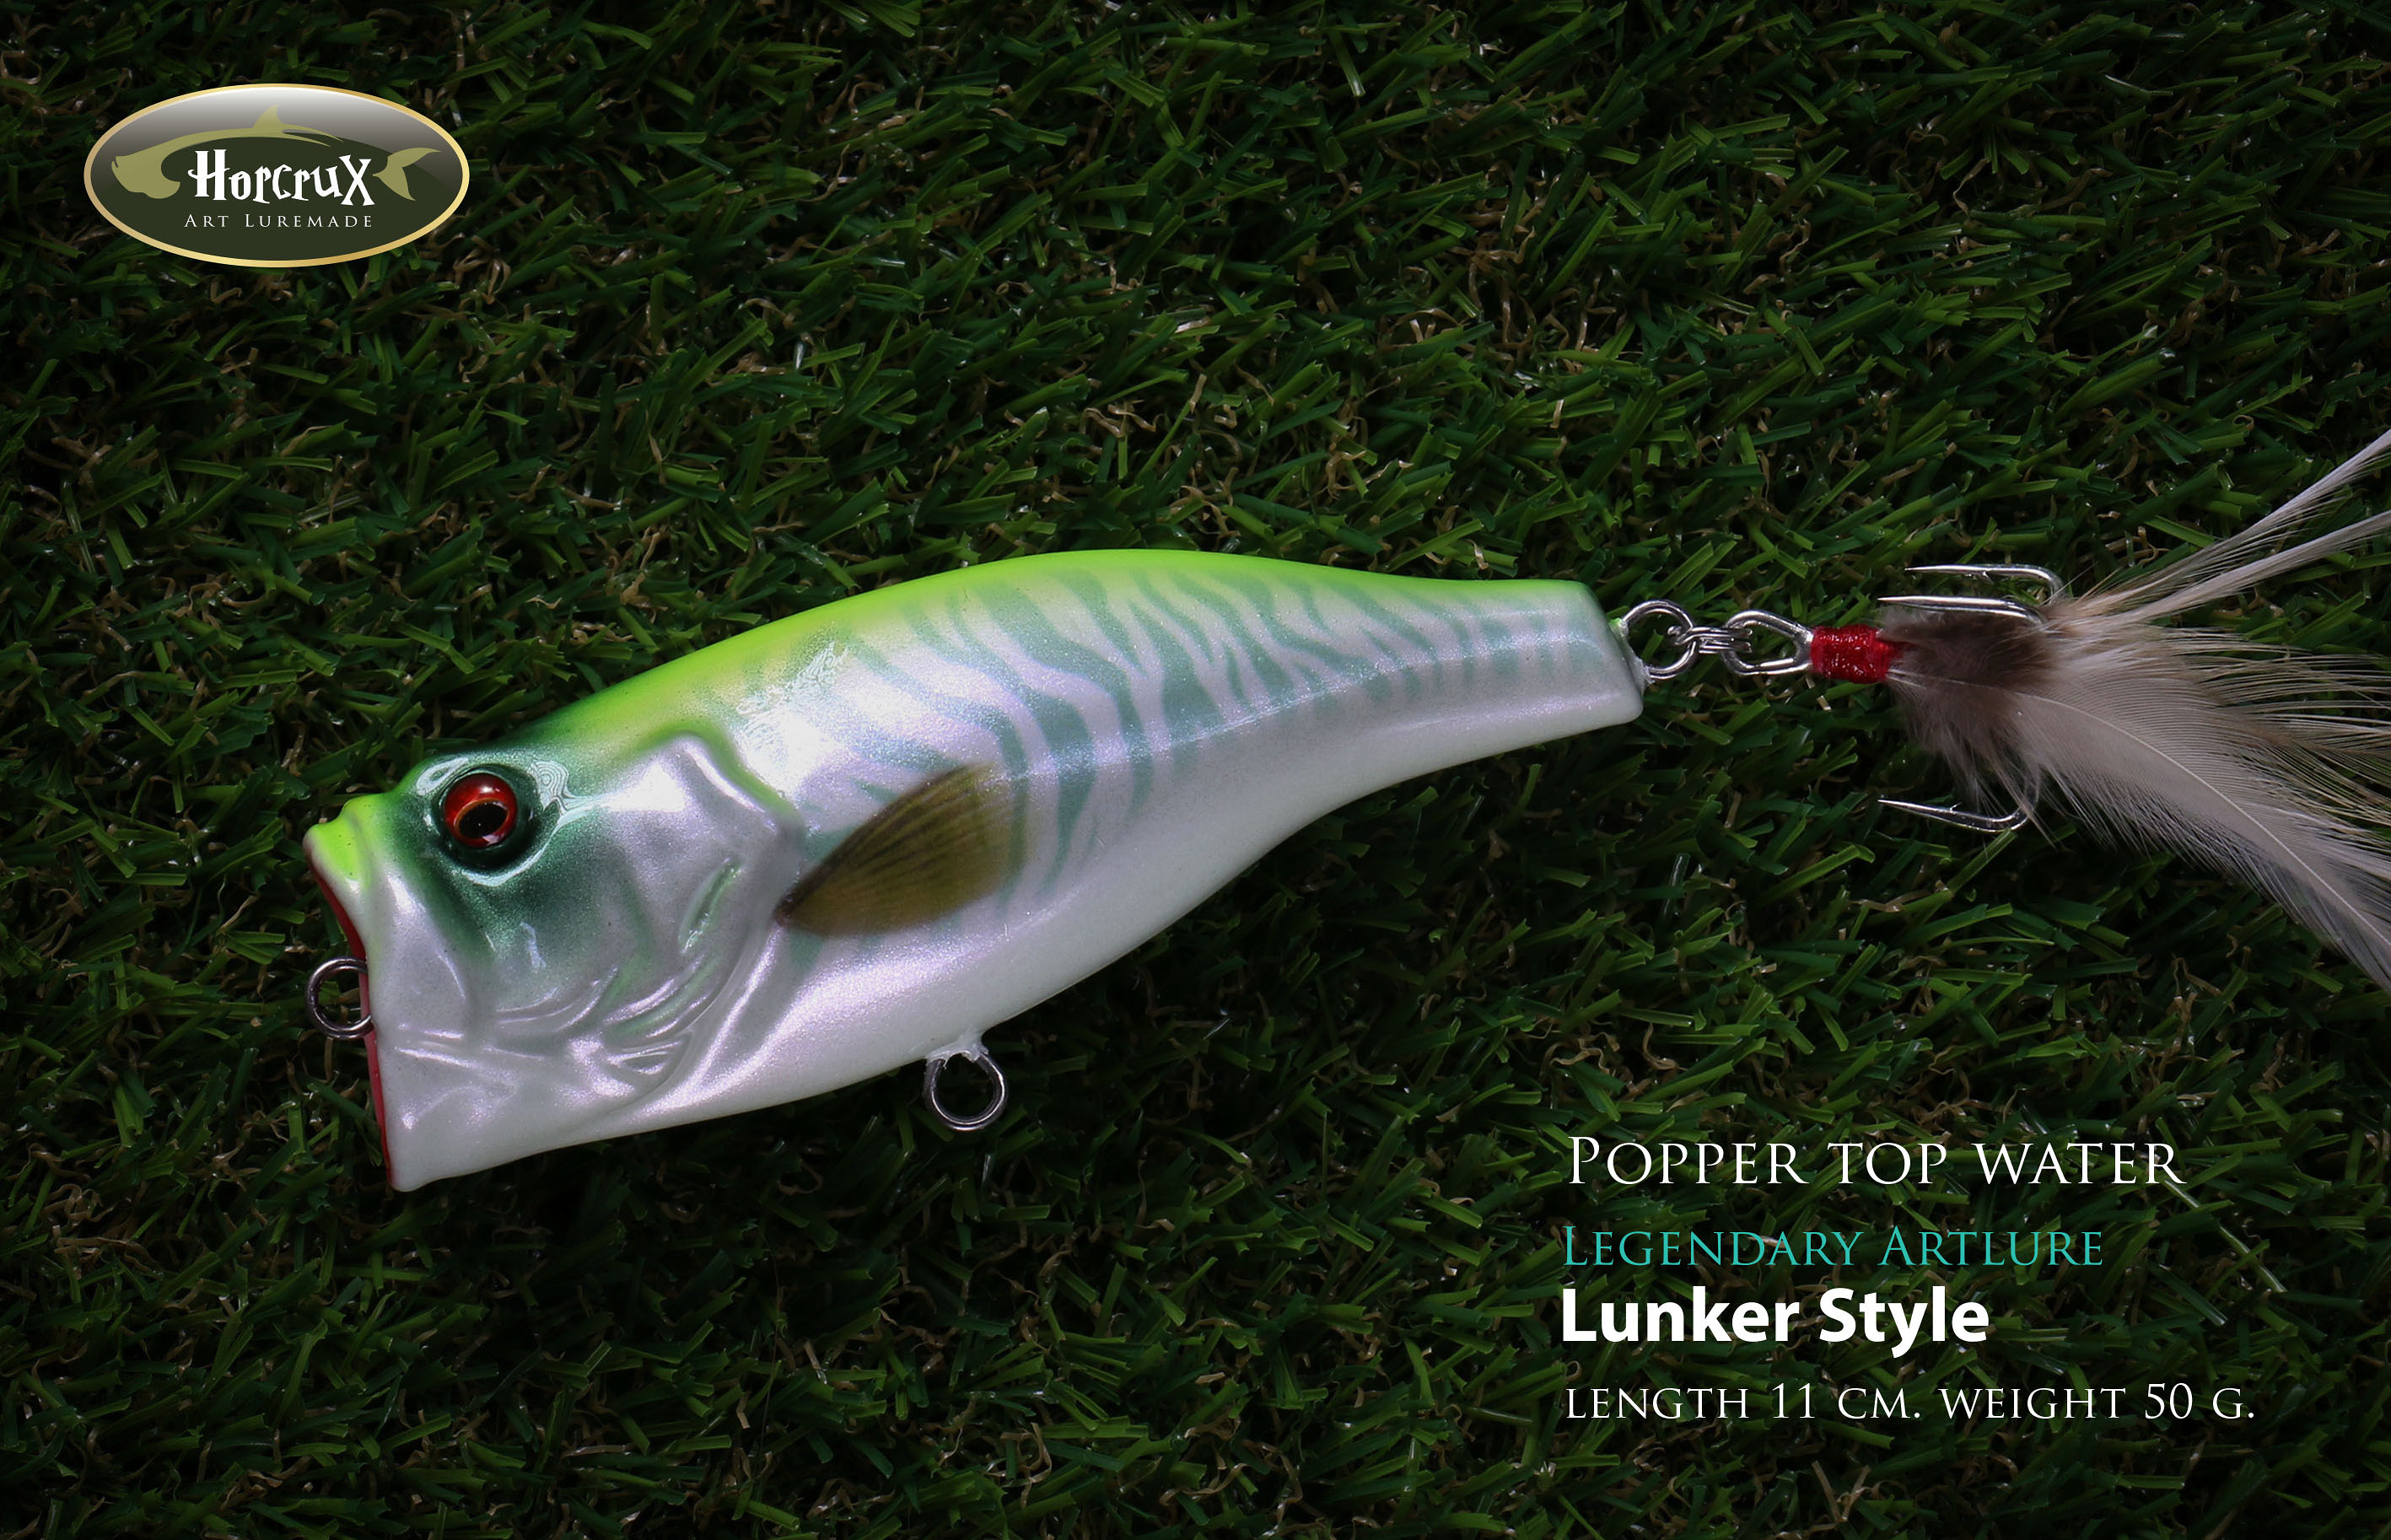 Popper legend : Lunker Style